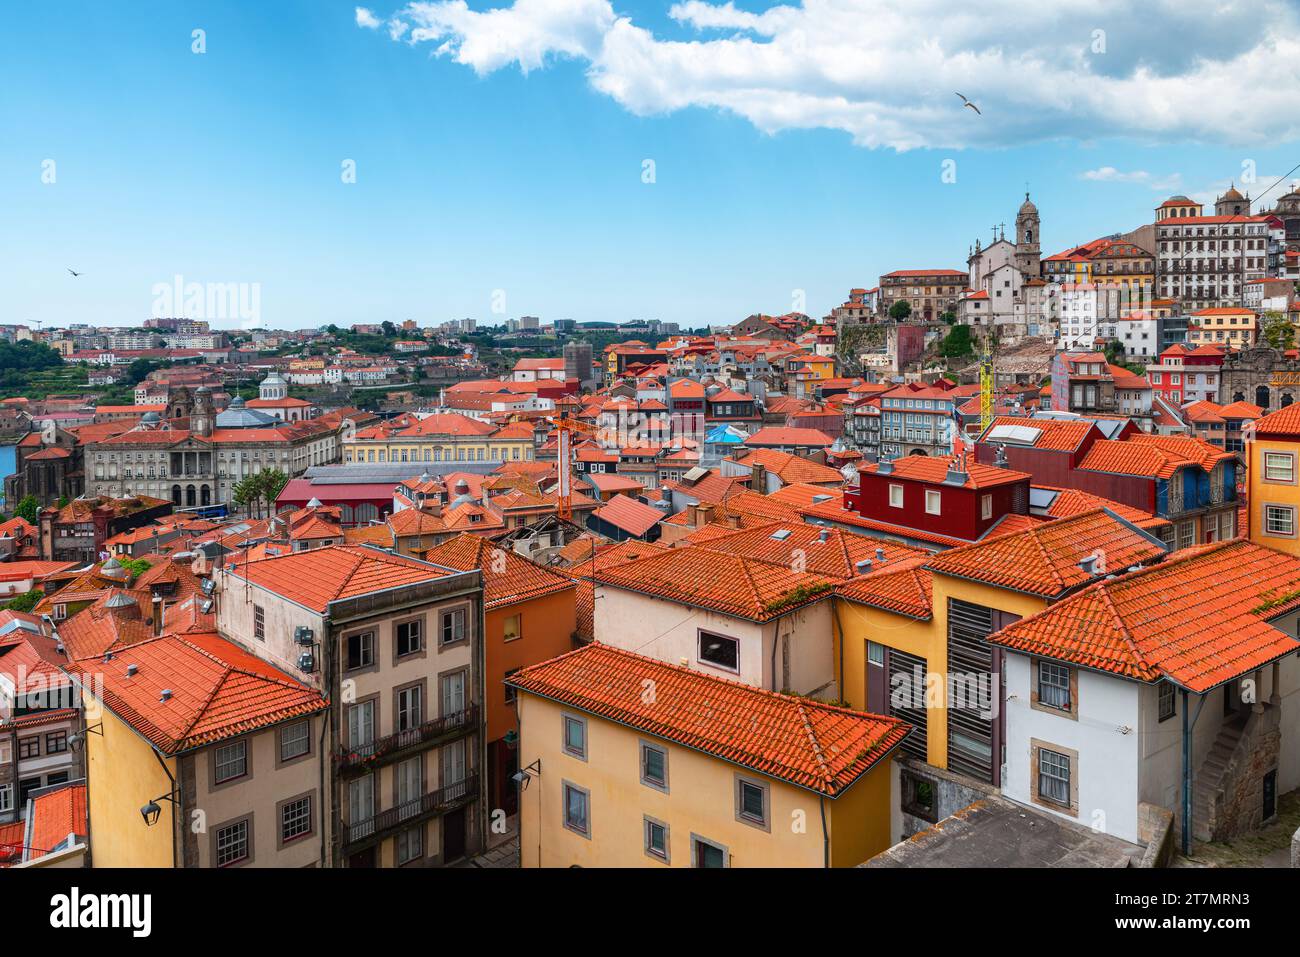 Vista aerea della città vecchia di Porto, con gli edifici sui tetti arancioni, Portogallo. Architettura medievale del centro di Oporto. Destinazione di viaggio Foto Stock